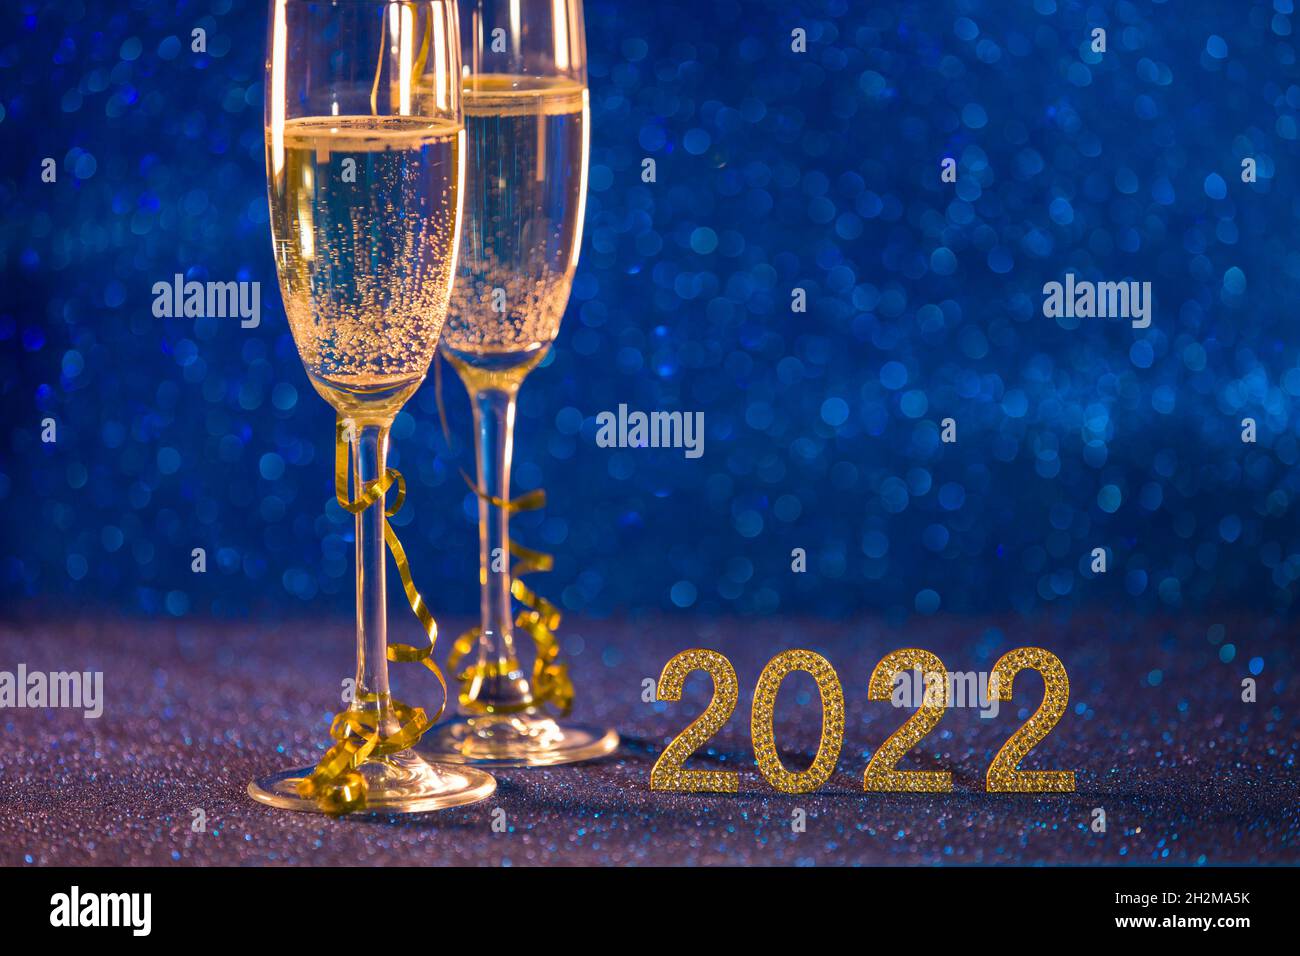 Frohes neues Jahr 2022. Weihnachten und Neujahr Hintergrund mit zwei Tassen, einem Glas Champagner und einem blauen Bokeh-Effekt Hintergrund. Stockfoto